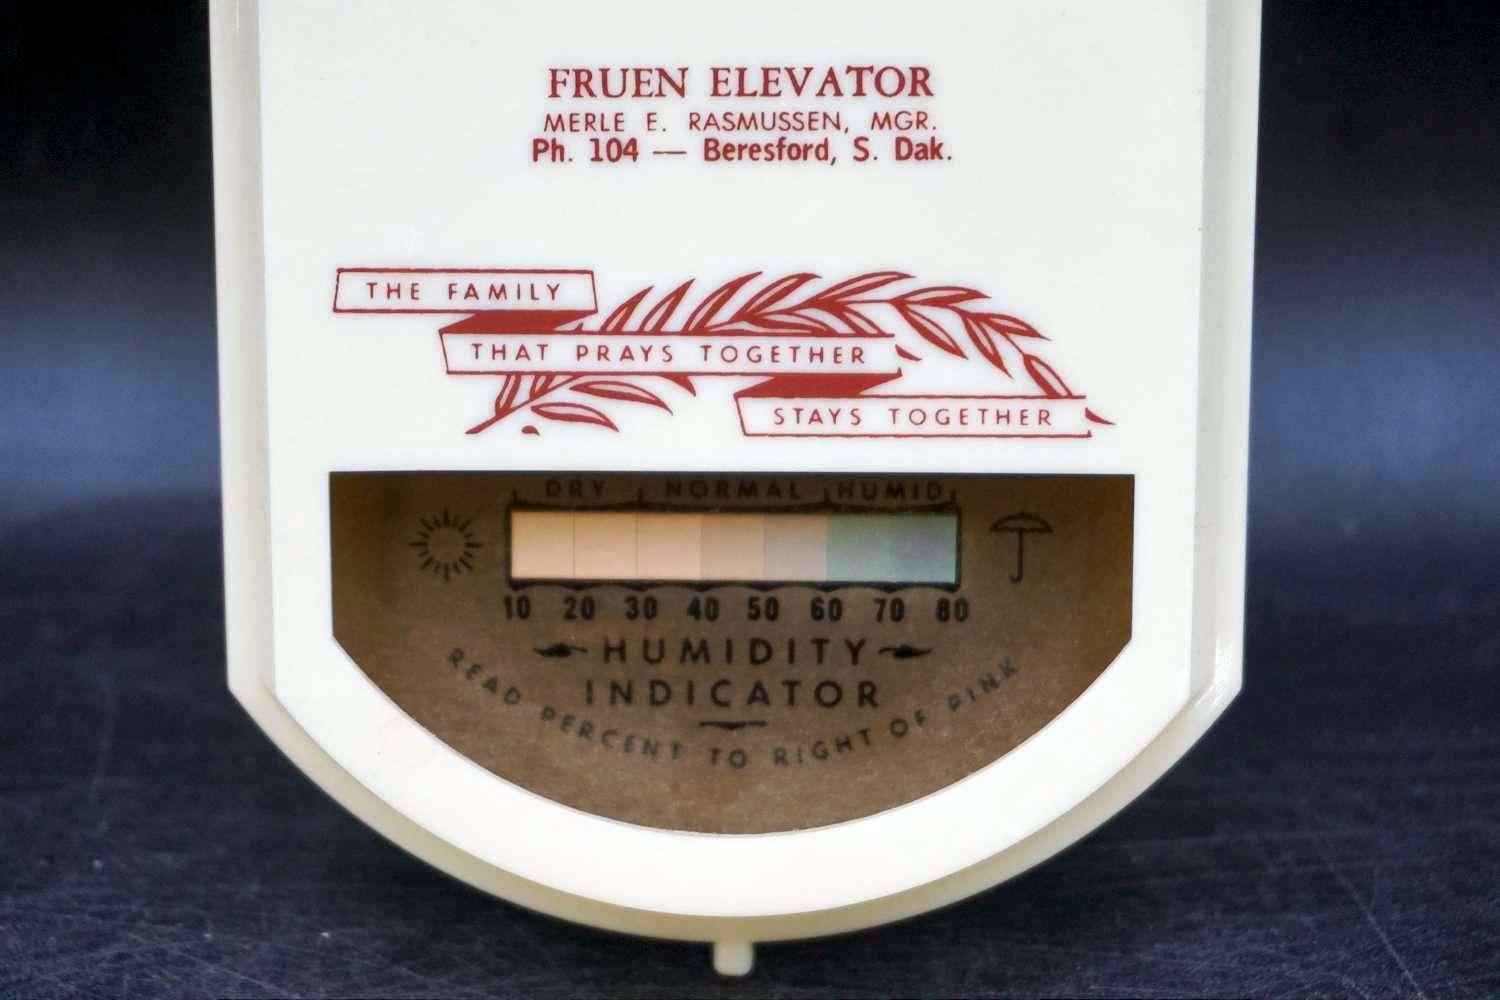 Beresford, South Dakota advertising thermometer.